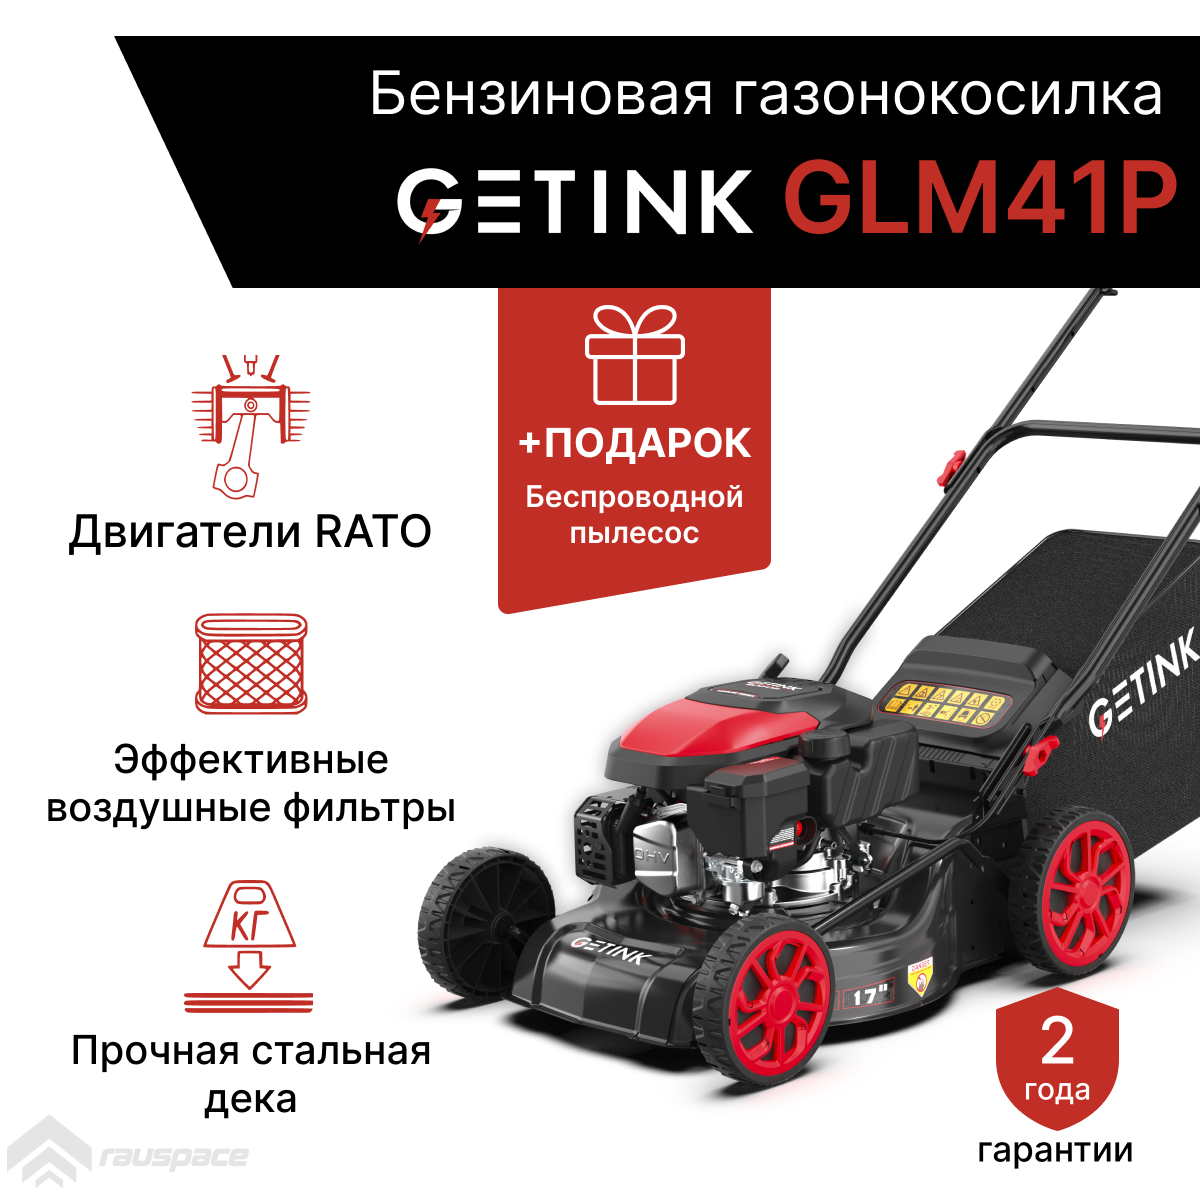 Бензиновая газонокосилка GETINK GLM41P + Пылесос автомобильный беспроводной